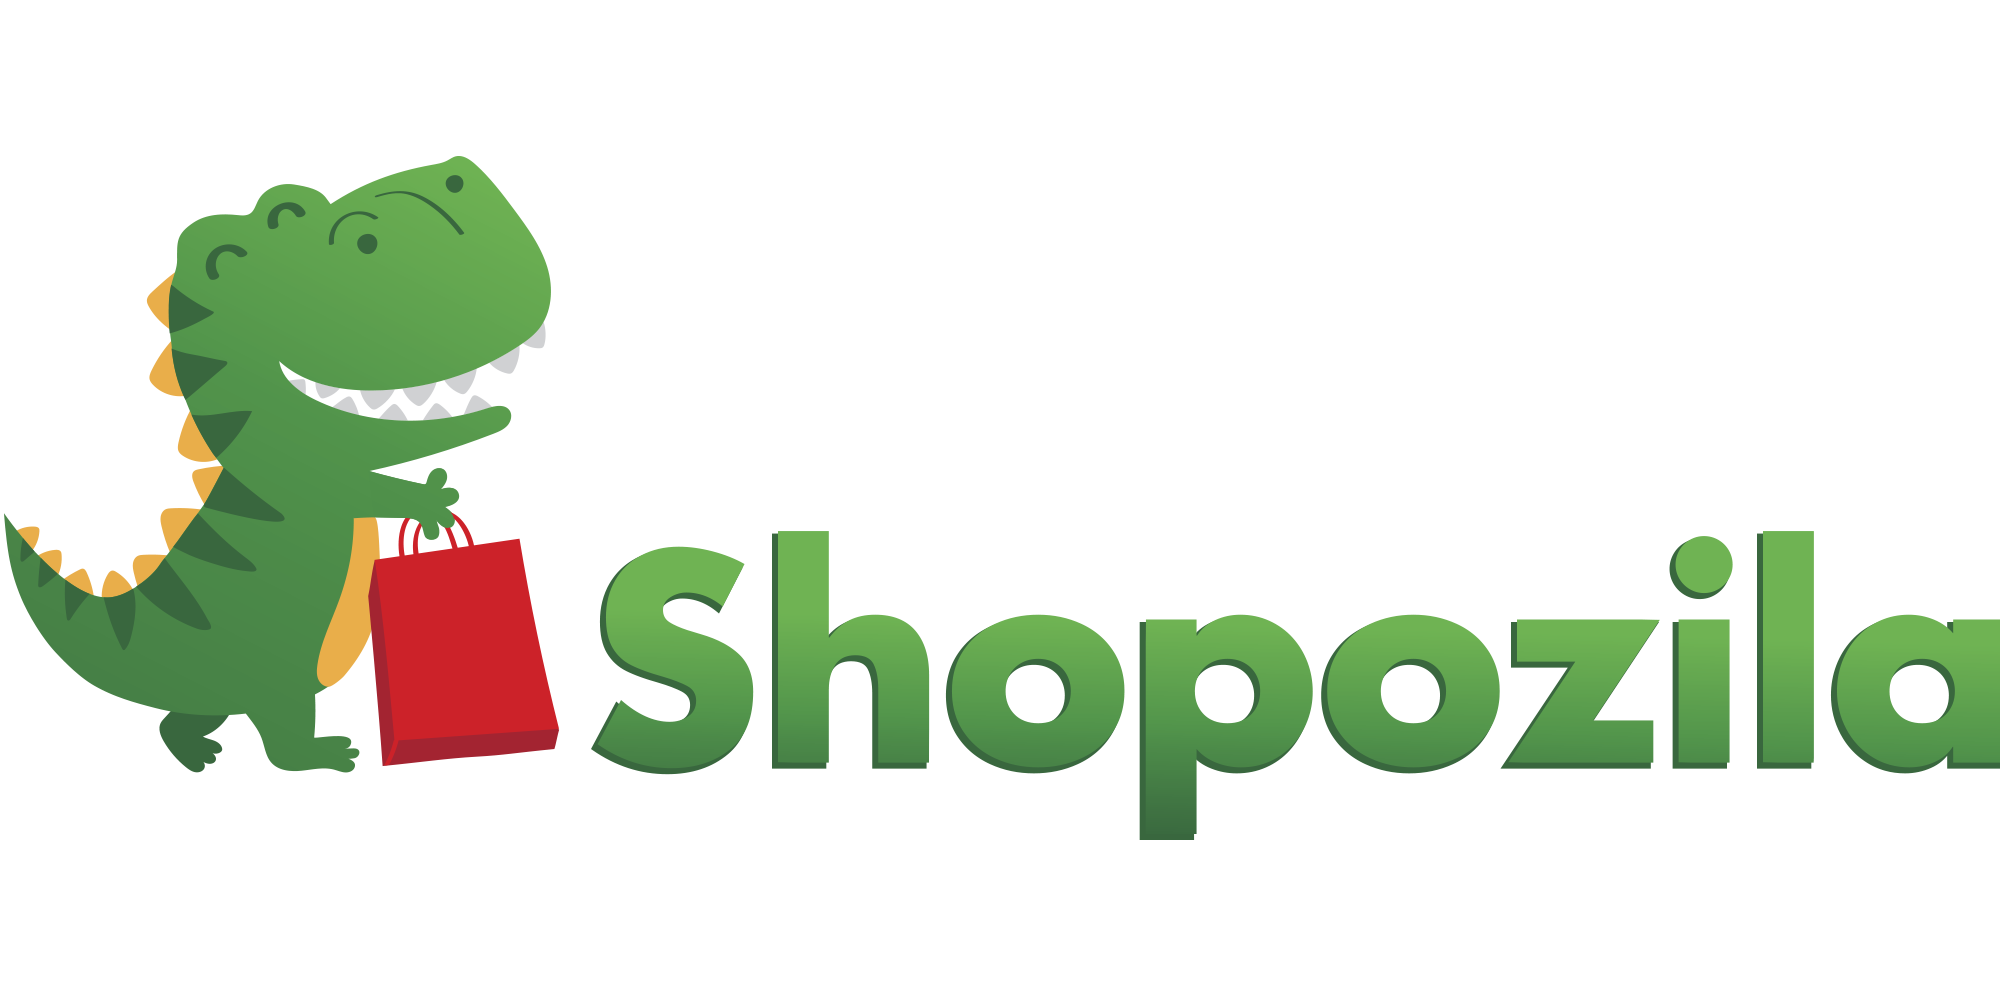 Интернет магазин салонного оборудования Shopozila.com